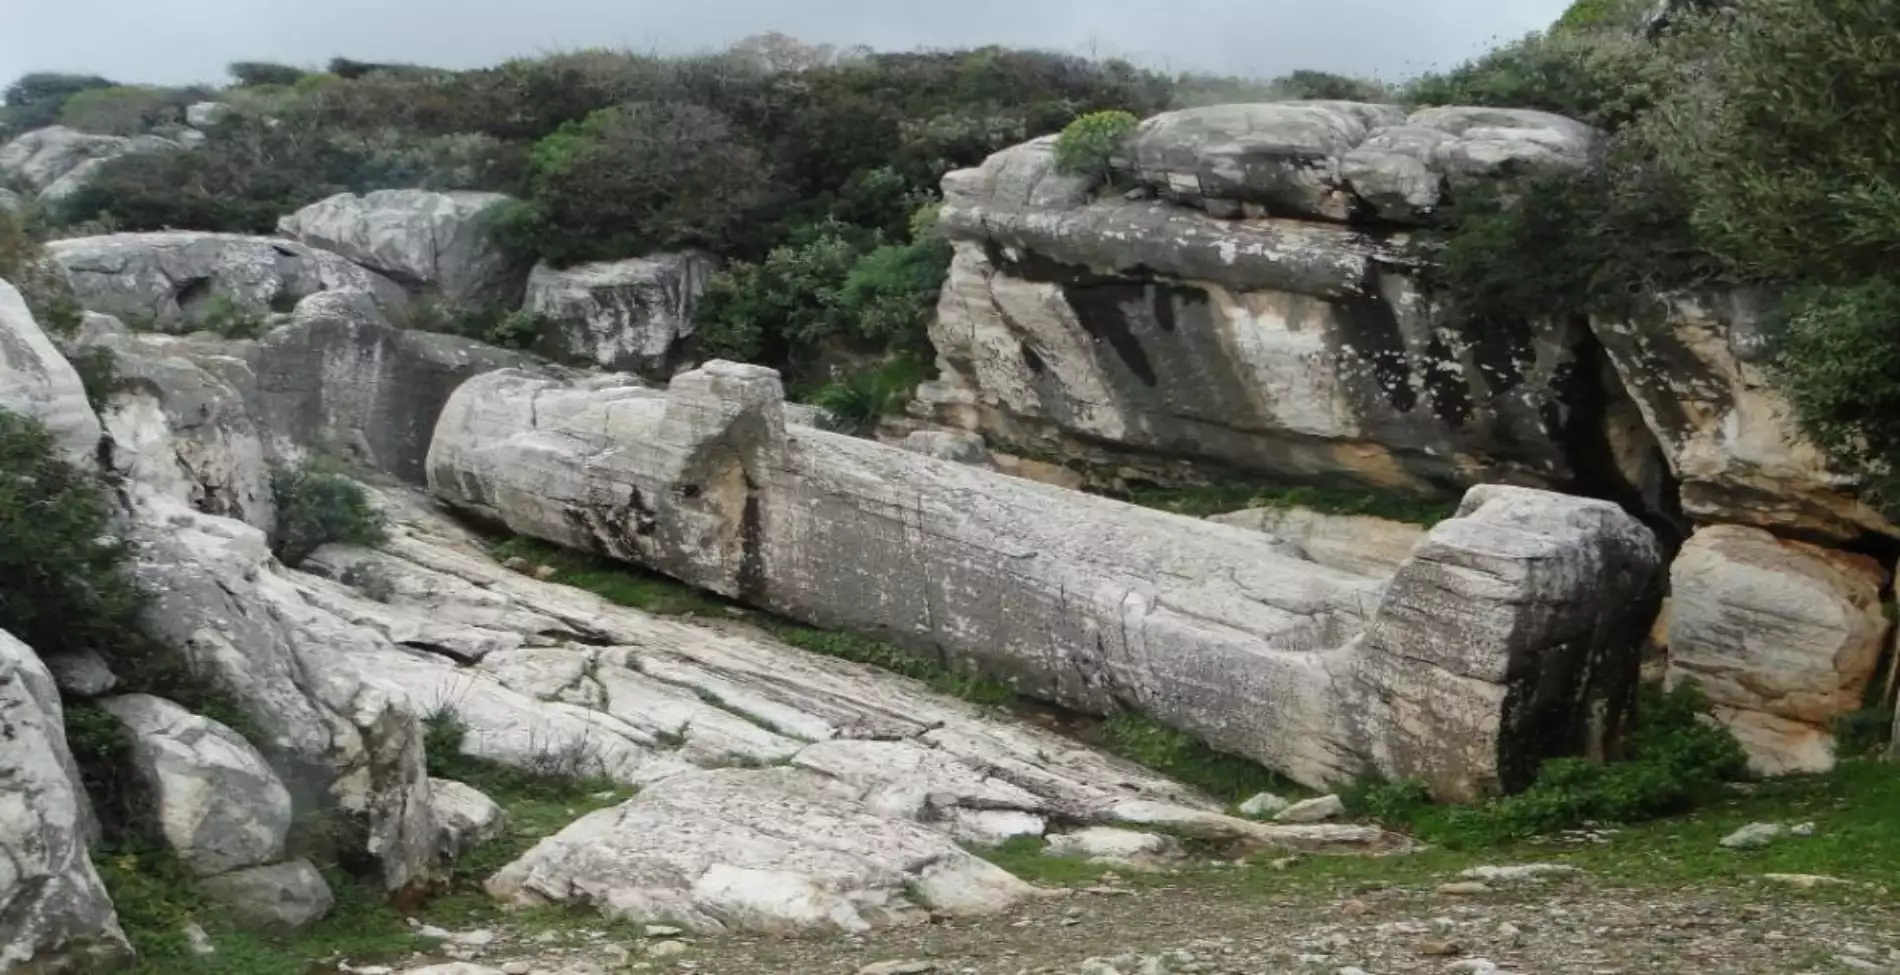 Naxos: The imposing Kouri and their history